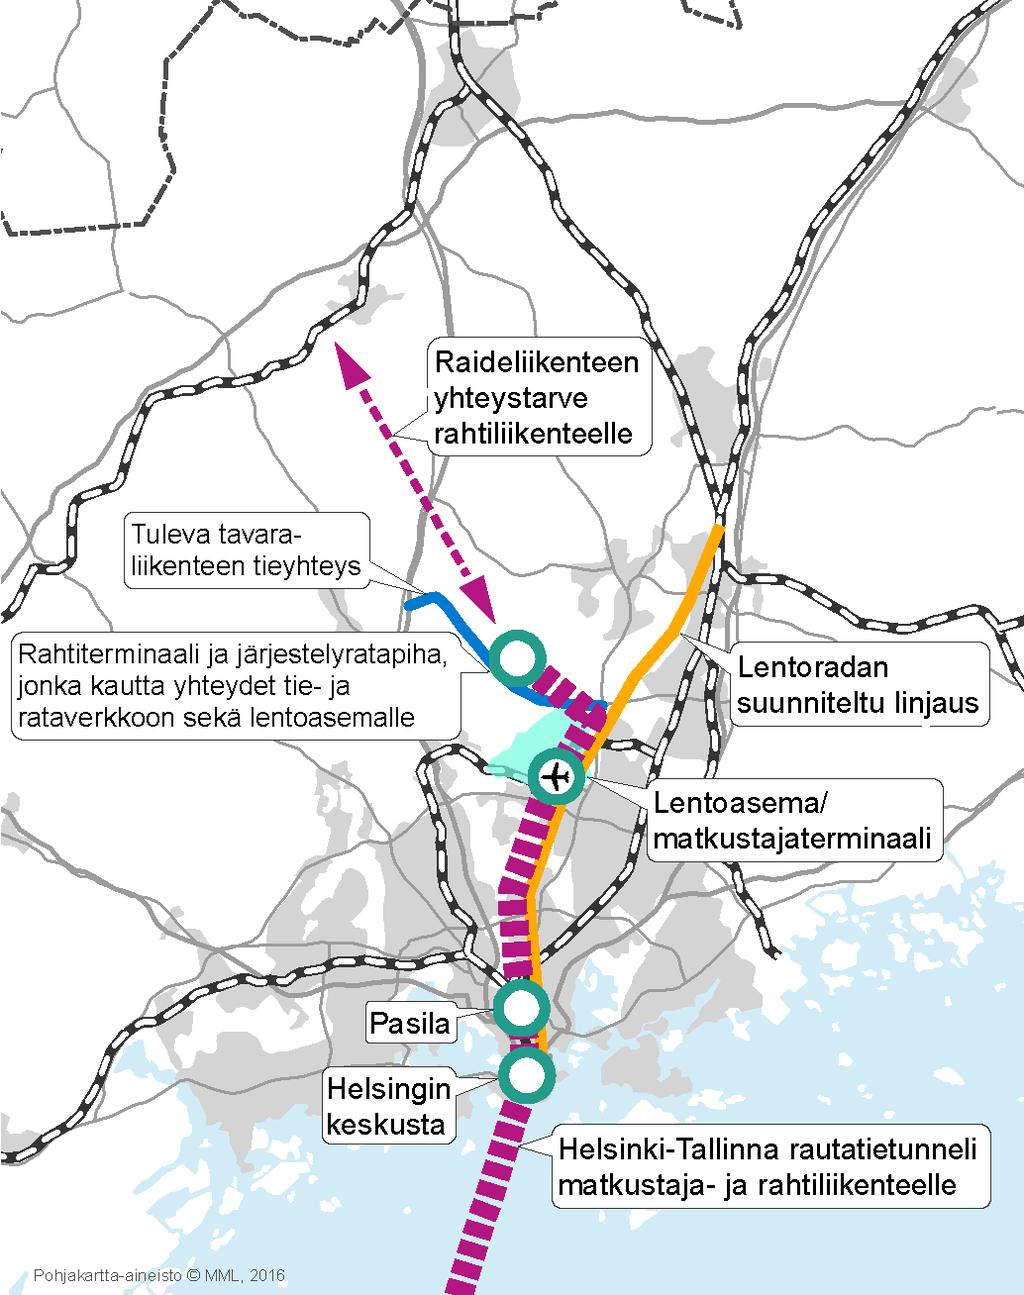 FinEst Link-projektin alustavien suunnitelmien mukaan Tallinna-tunnelissa yhdistyvät merenalaisissa rautatietunneleissa sekä matkustaja- että rahtiliikenne.